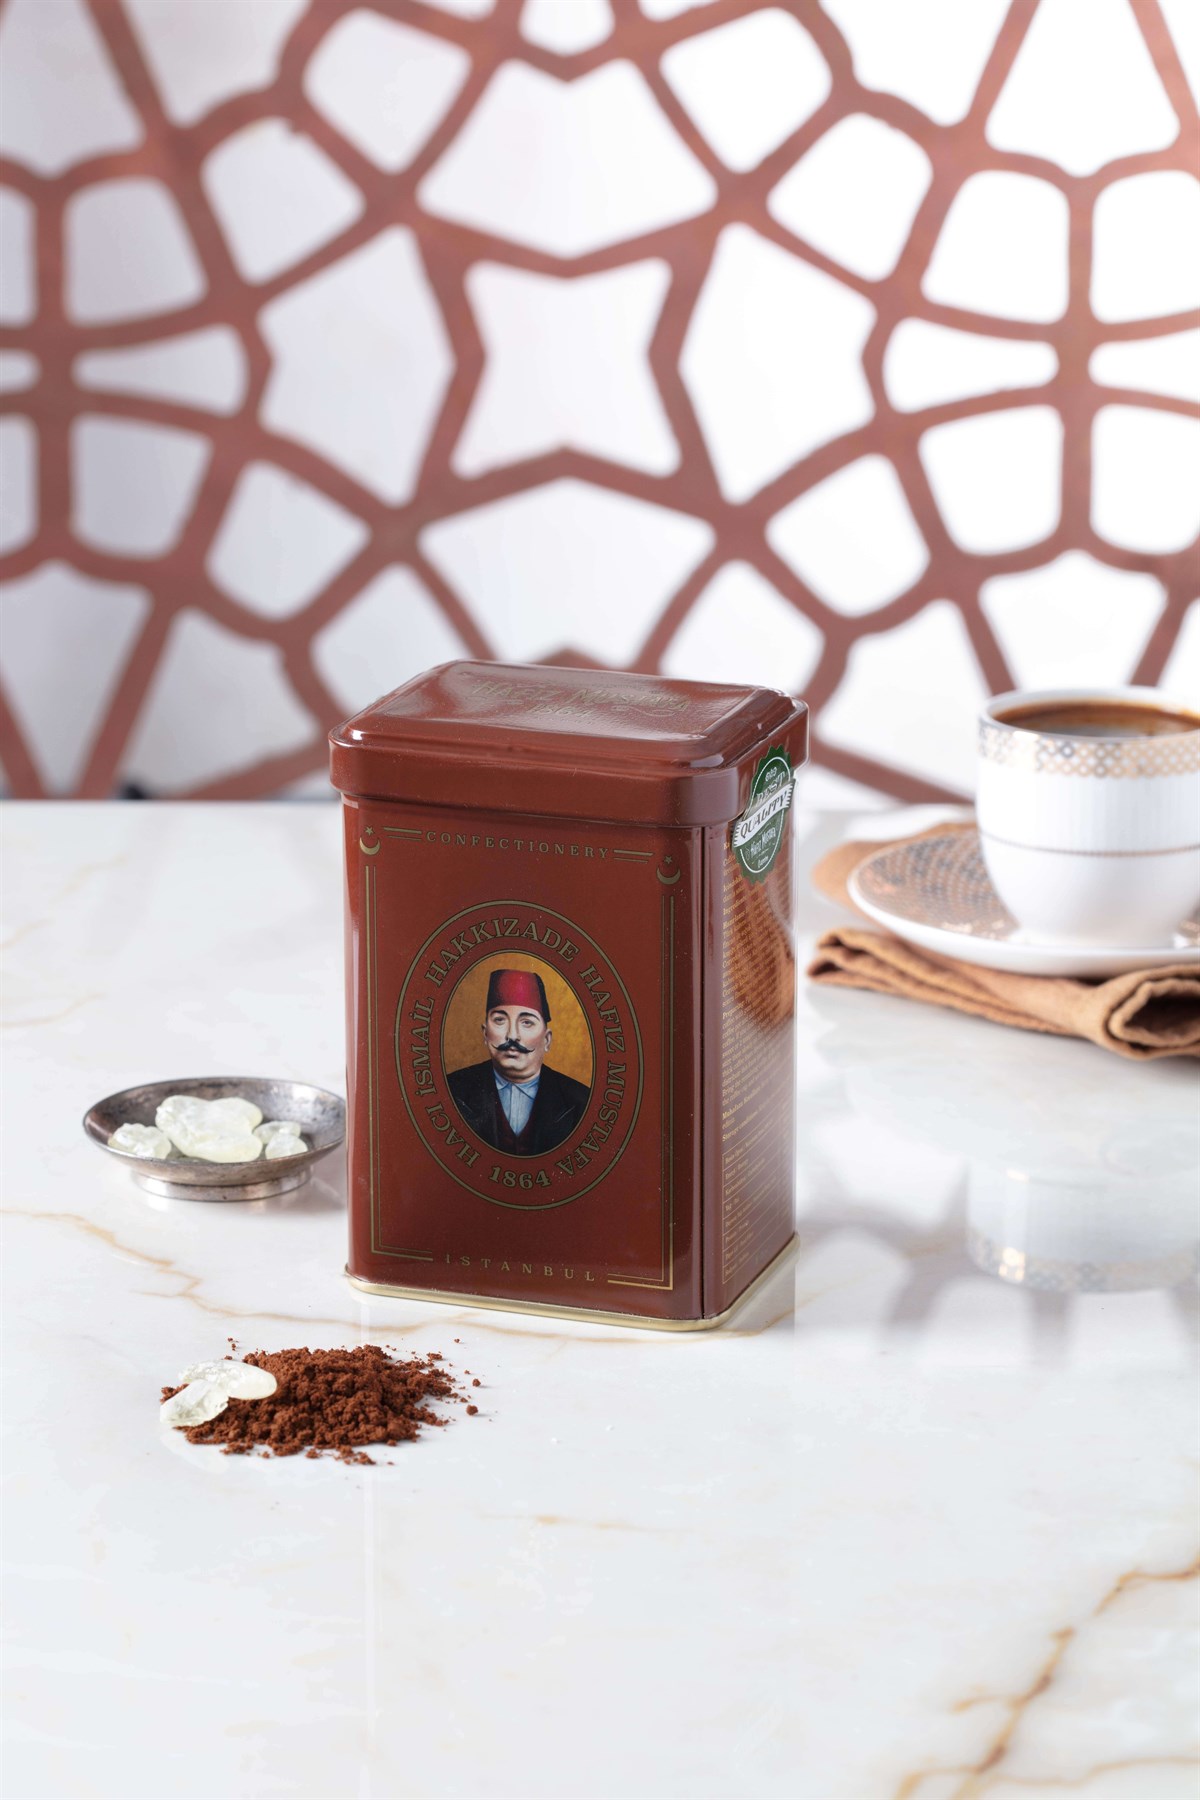 منتج تركي: قهوة بالمستكه بعبق التاريخ من حافظ مصطفى 170 غ